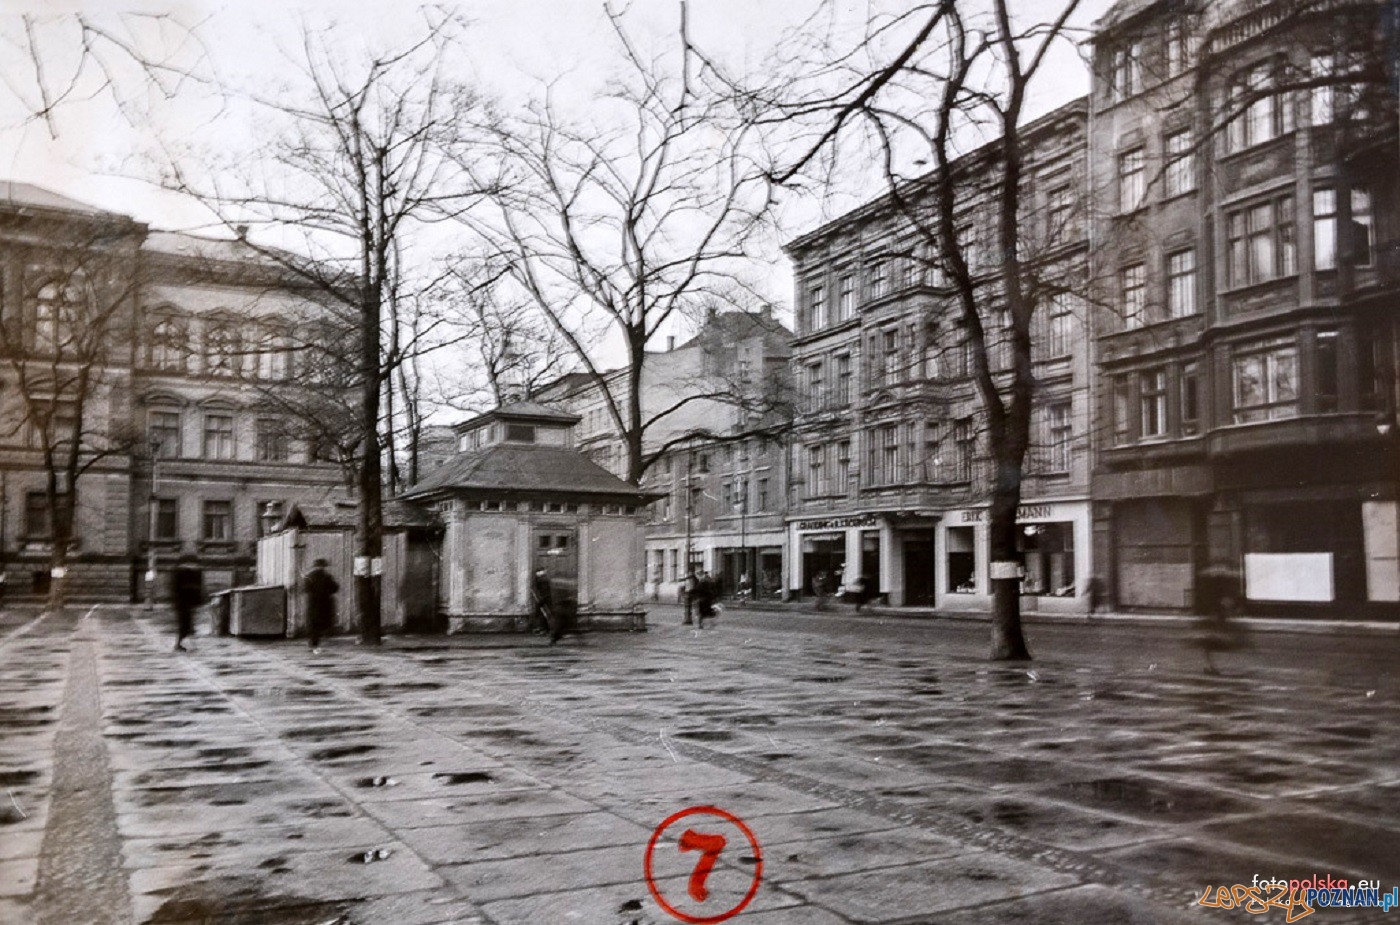 Plac Wielkopolski 1940 - 44  Foto: Miejski Konserwator Zabytków / fotopolska